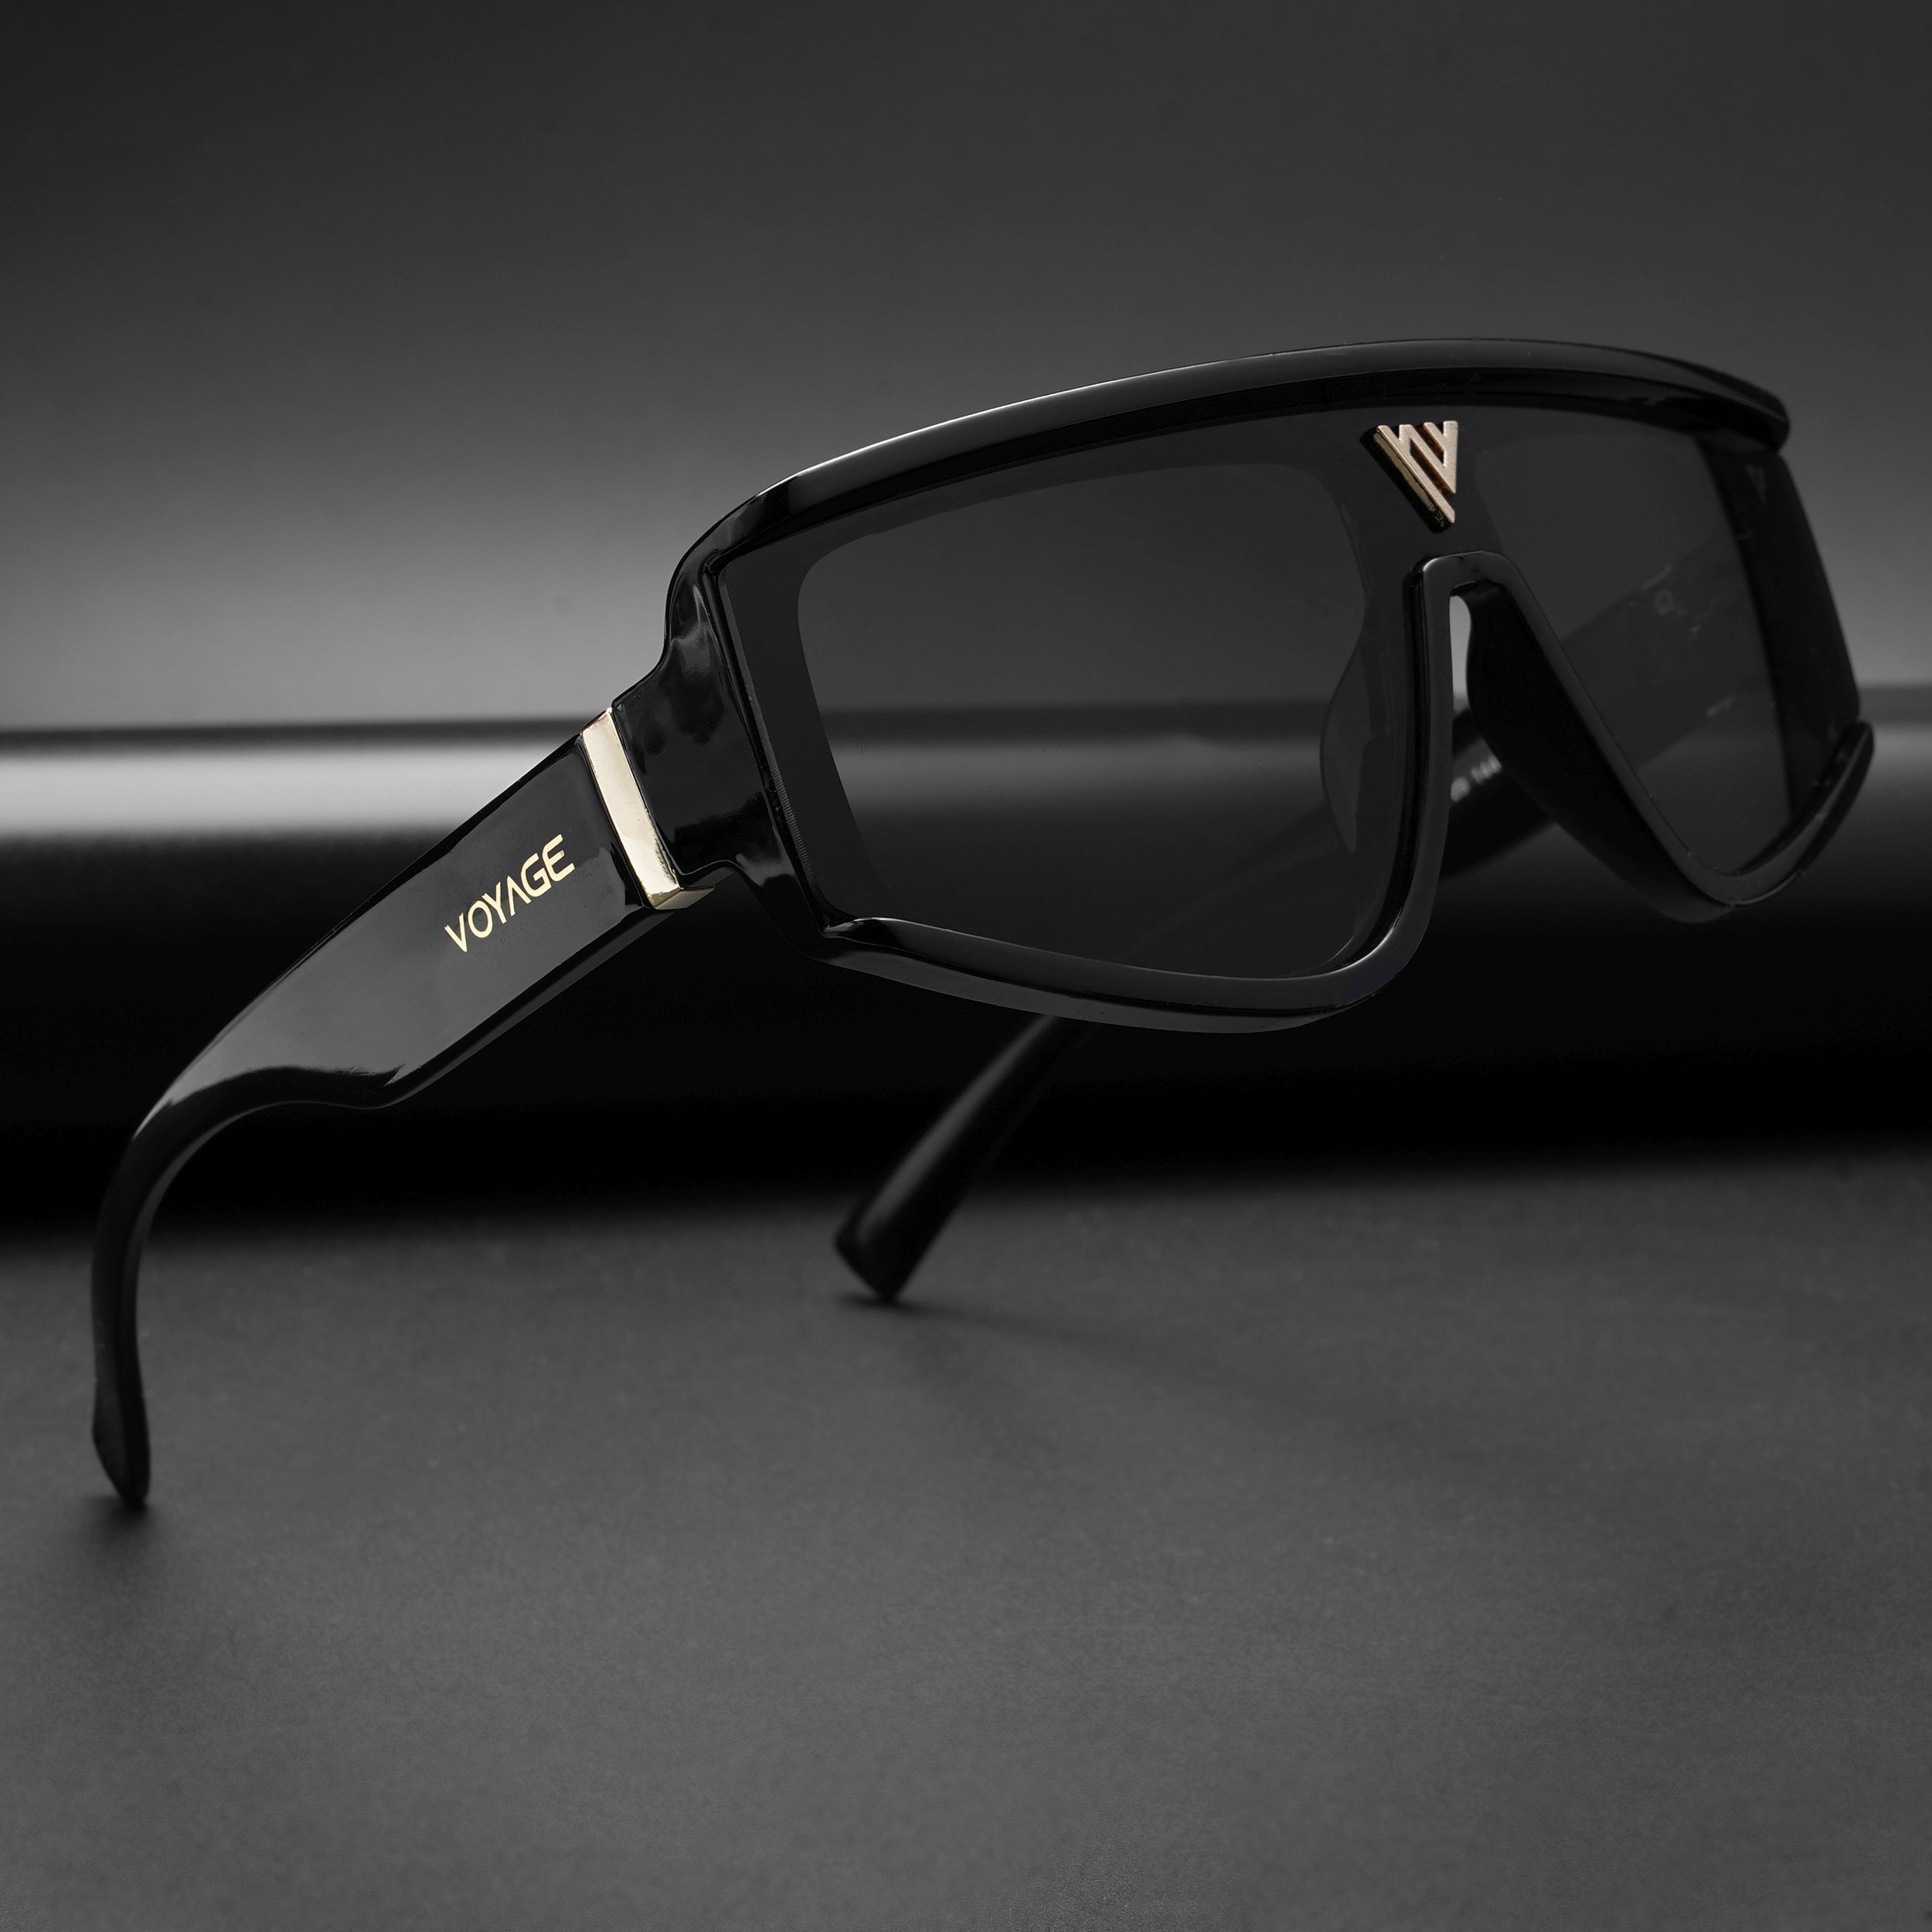 Voyage Technics Sunglasses for Men & Women (Black Lens | Black Frame - MG5588)